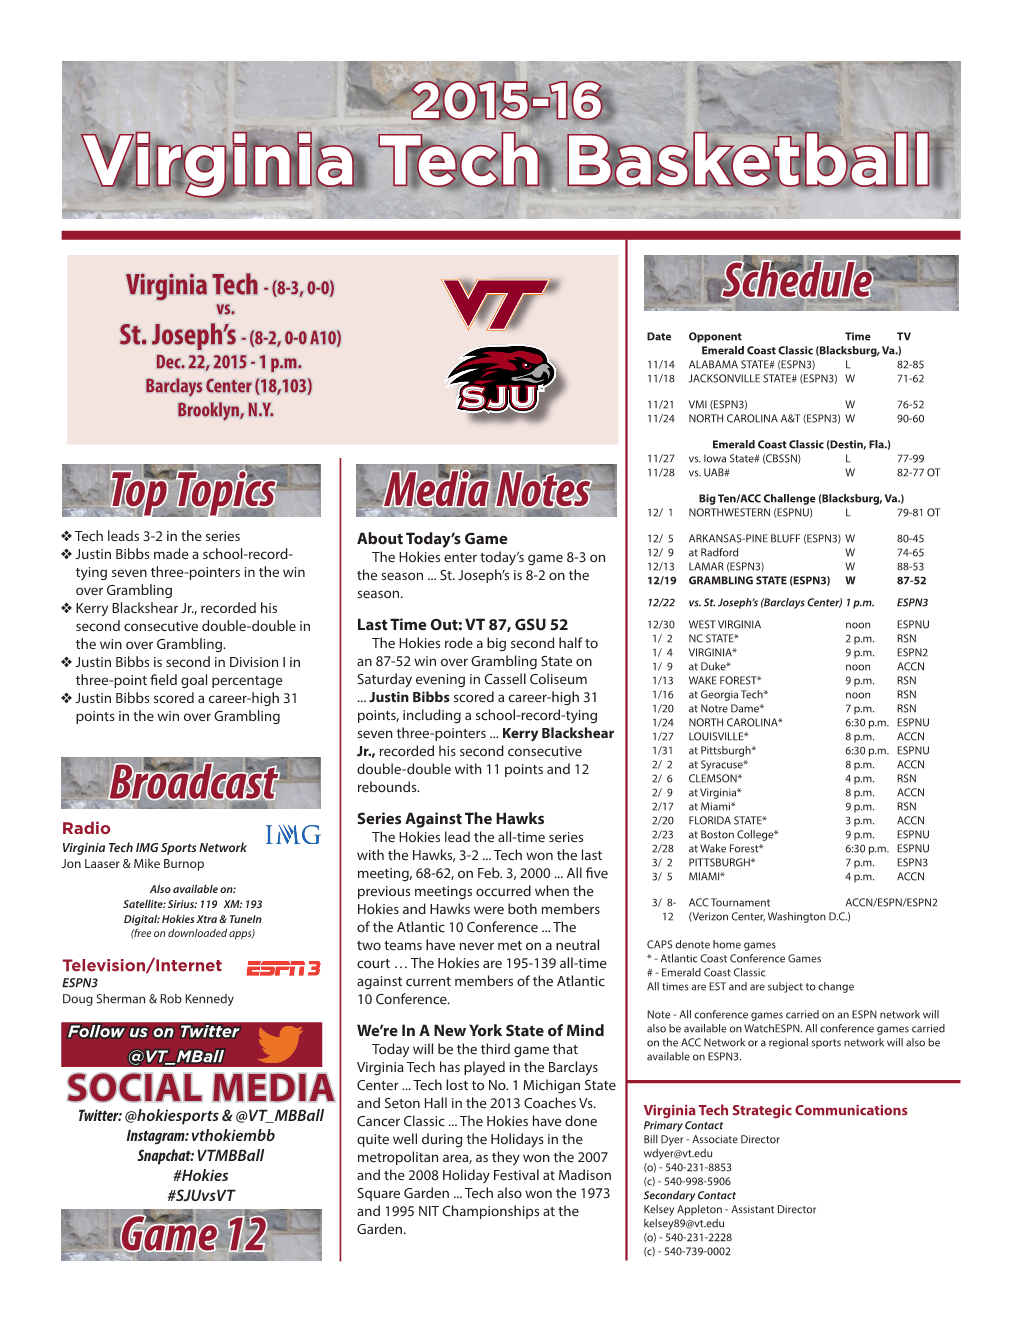 Virginia Tech Basketball